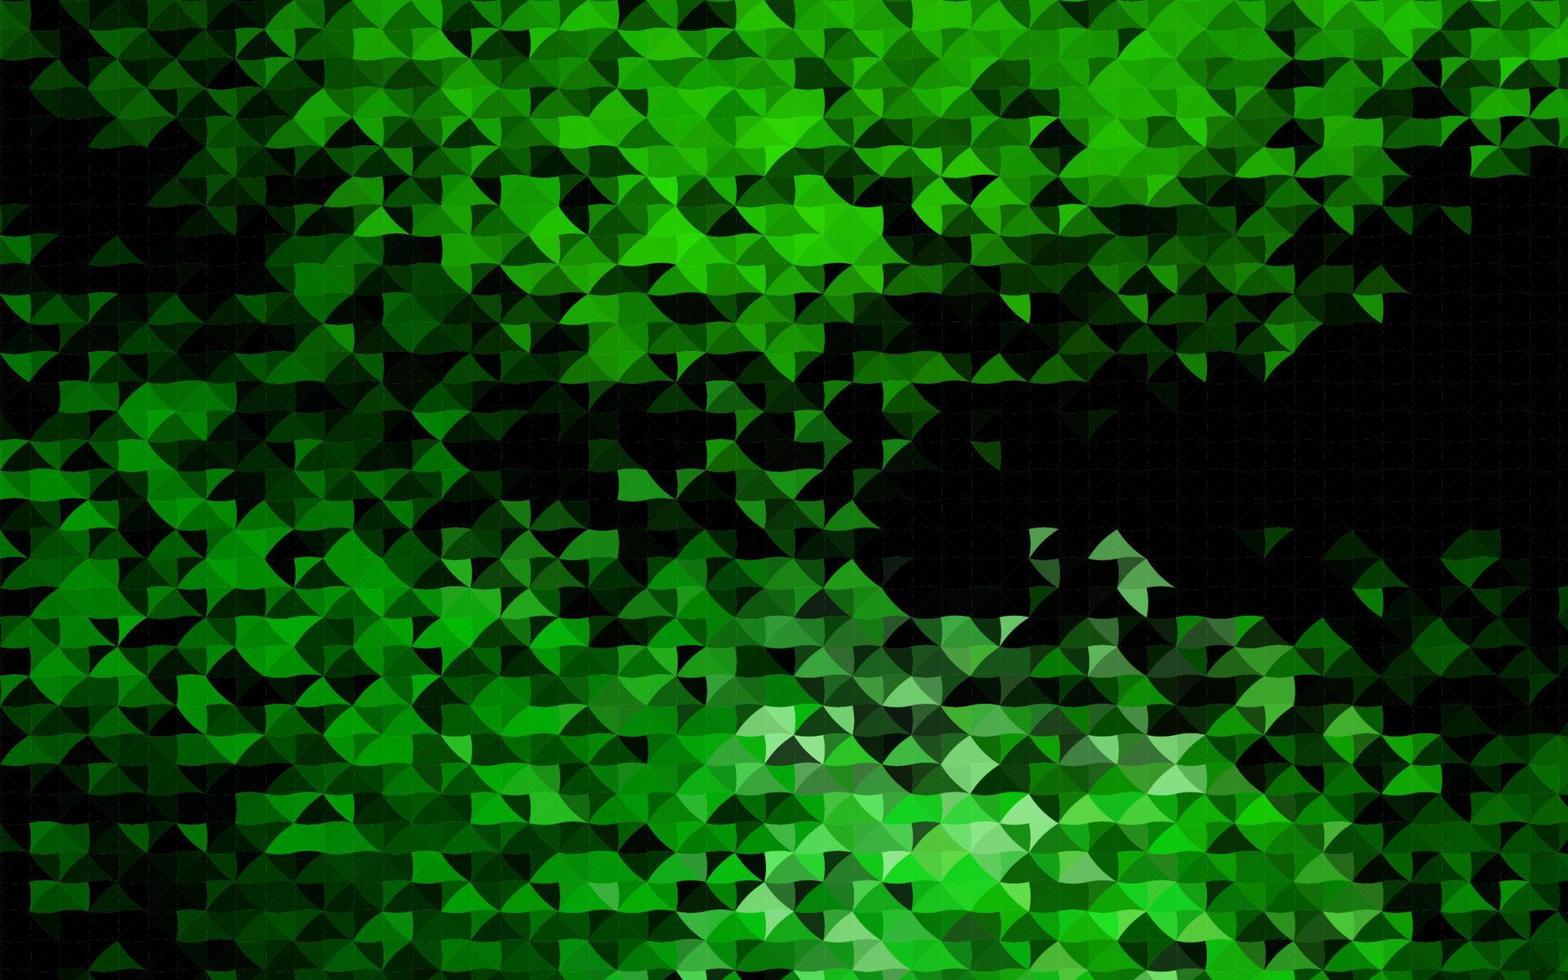 fond de vecteur vert foncé avec des triangles.